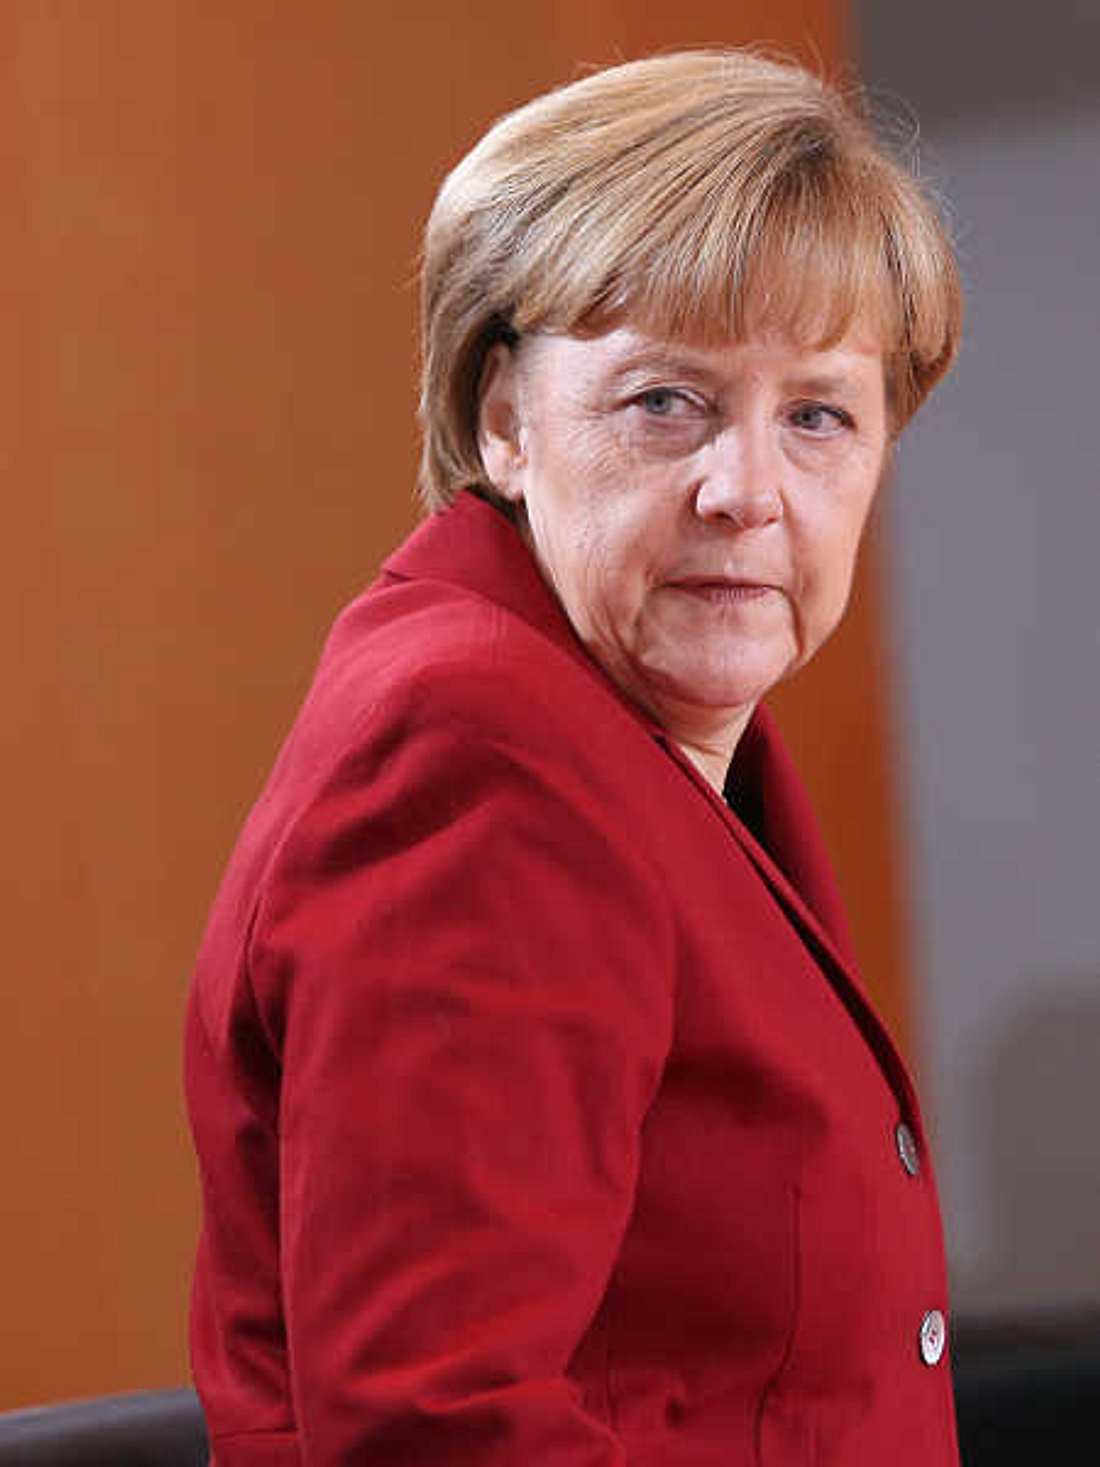 Deutsche Filmstars schreiben Offenen Beschwerde-Brief an Angela Merkel